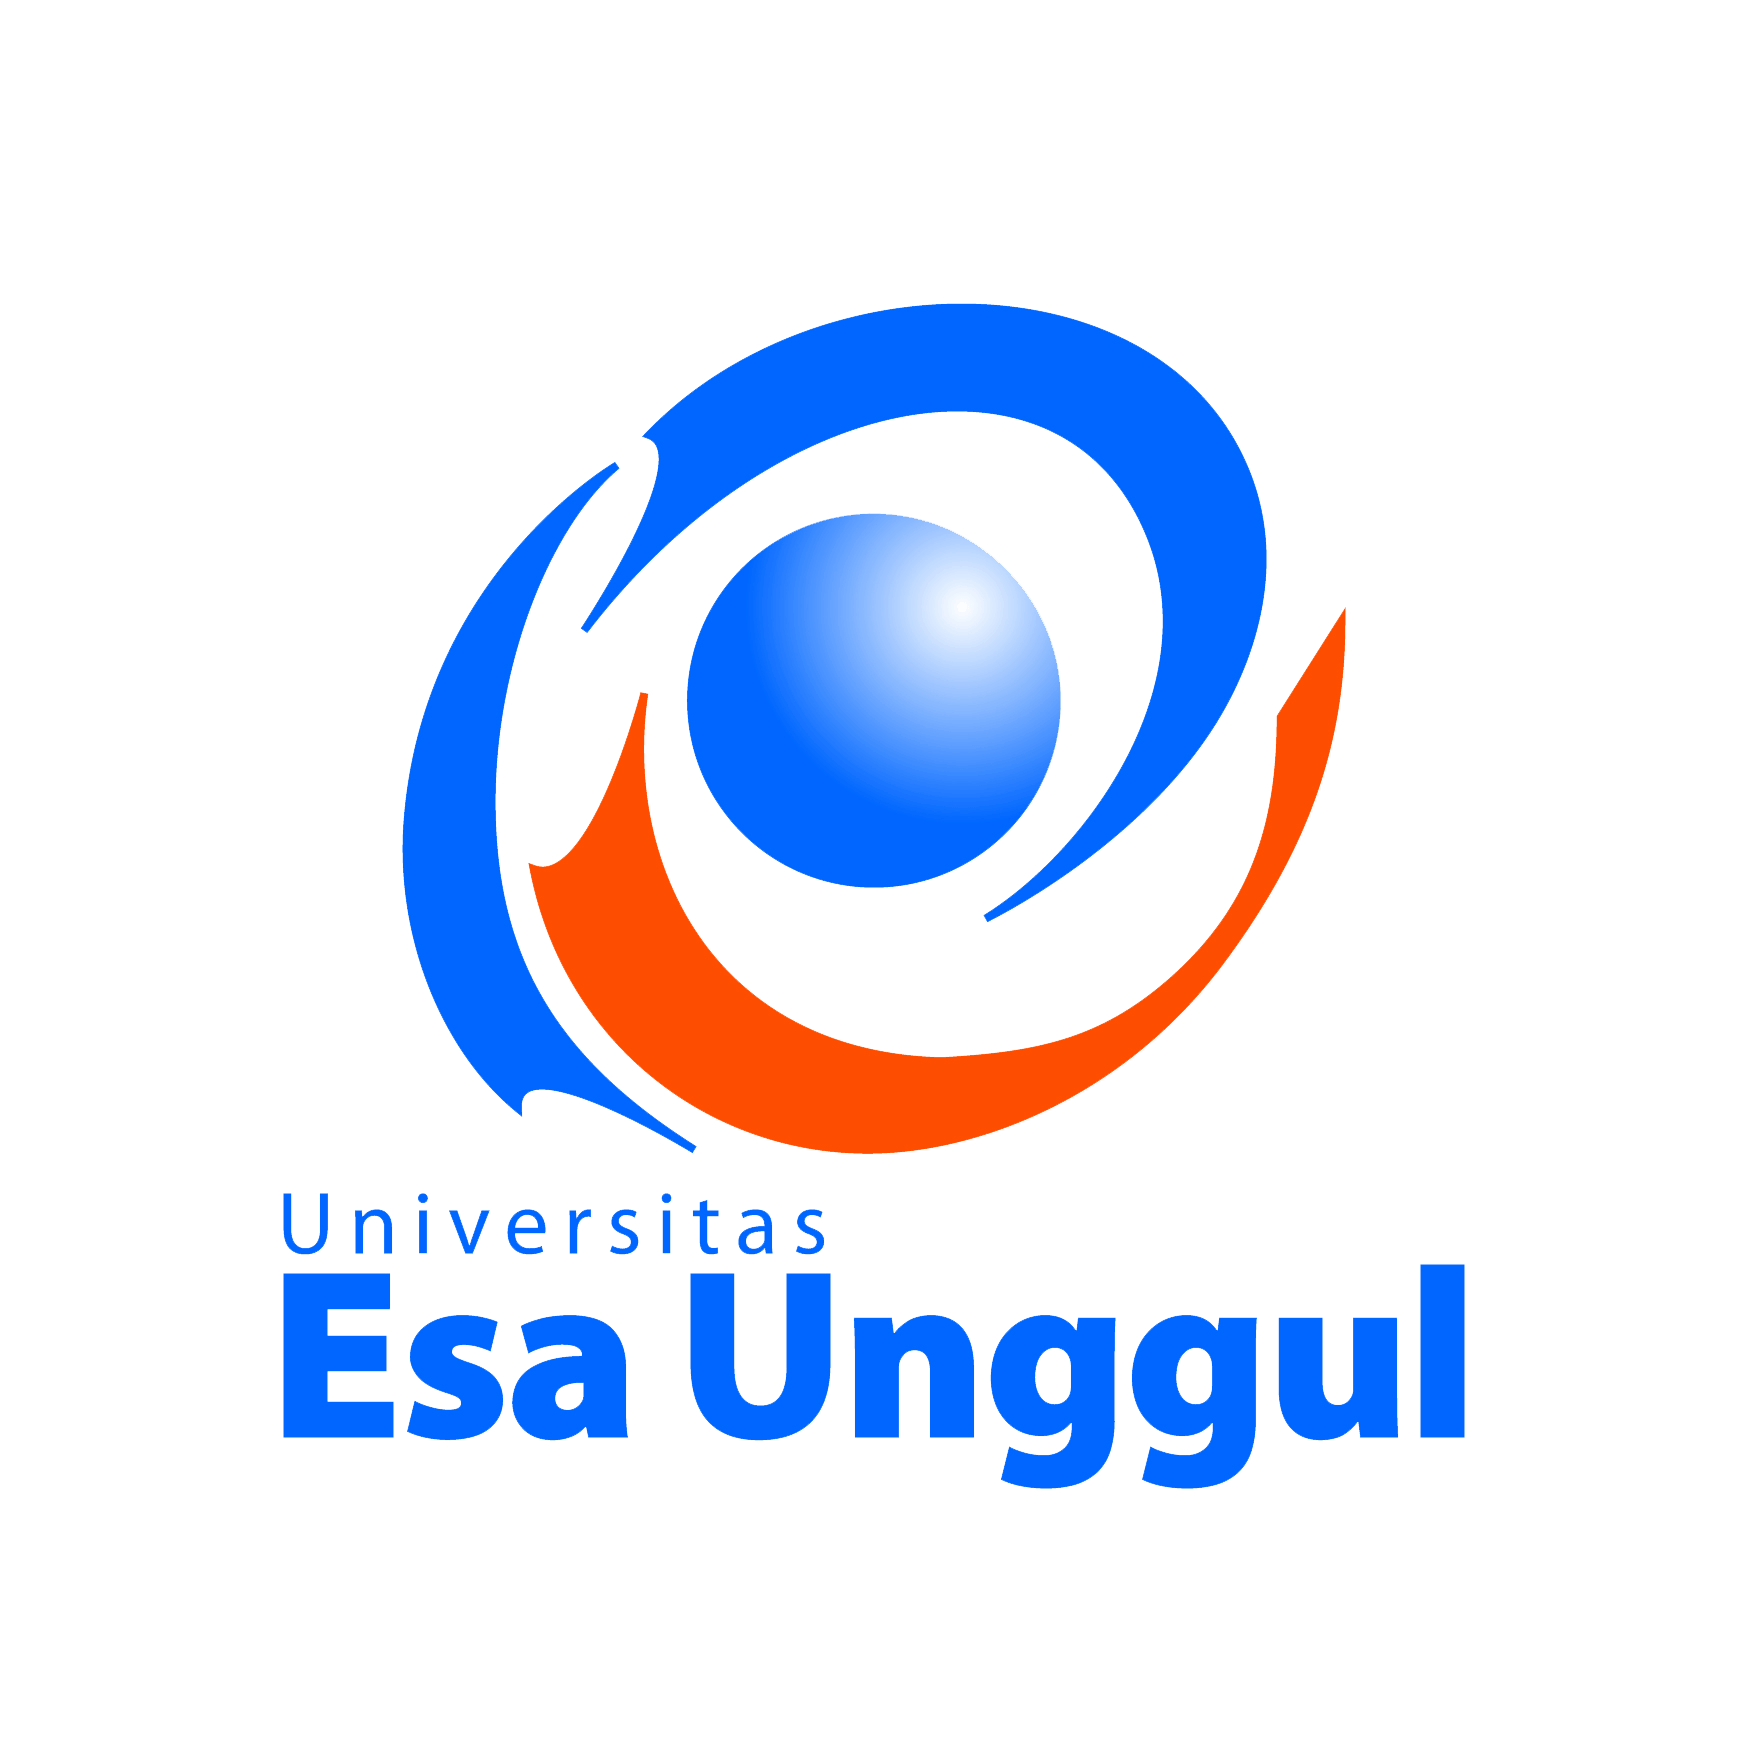 Logo Esa Unggul